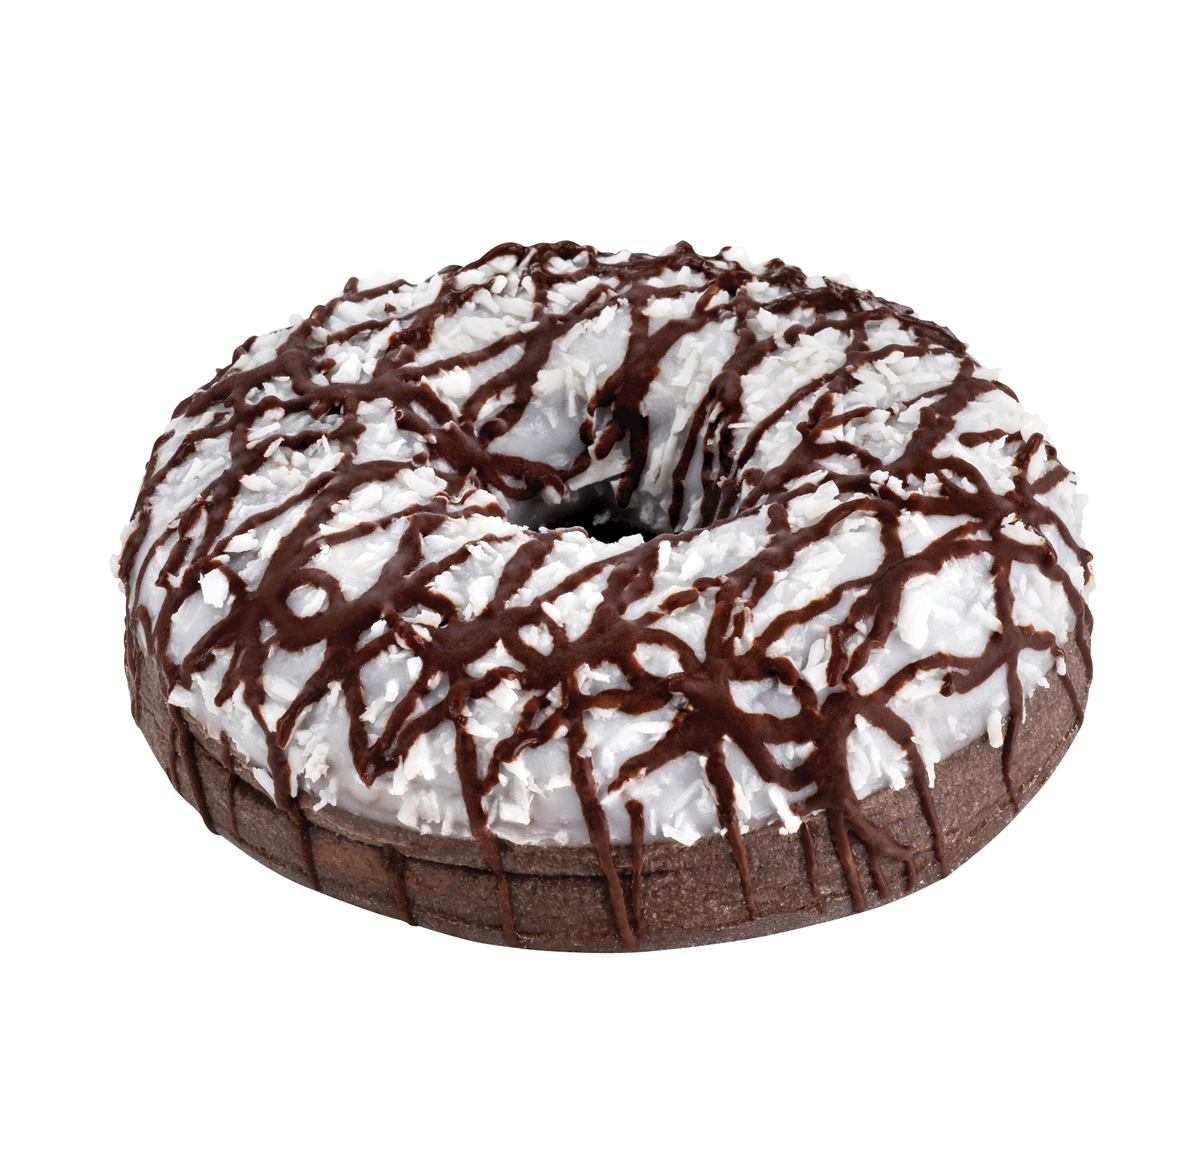 Black Label® donut chocolat noix de coco